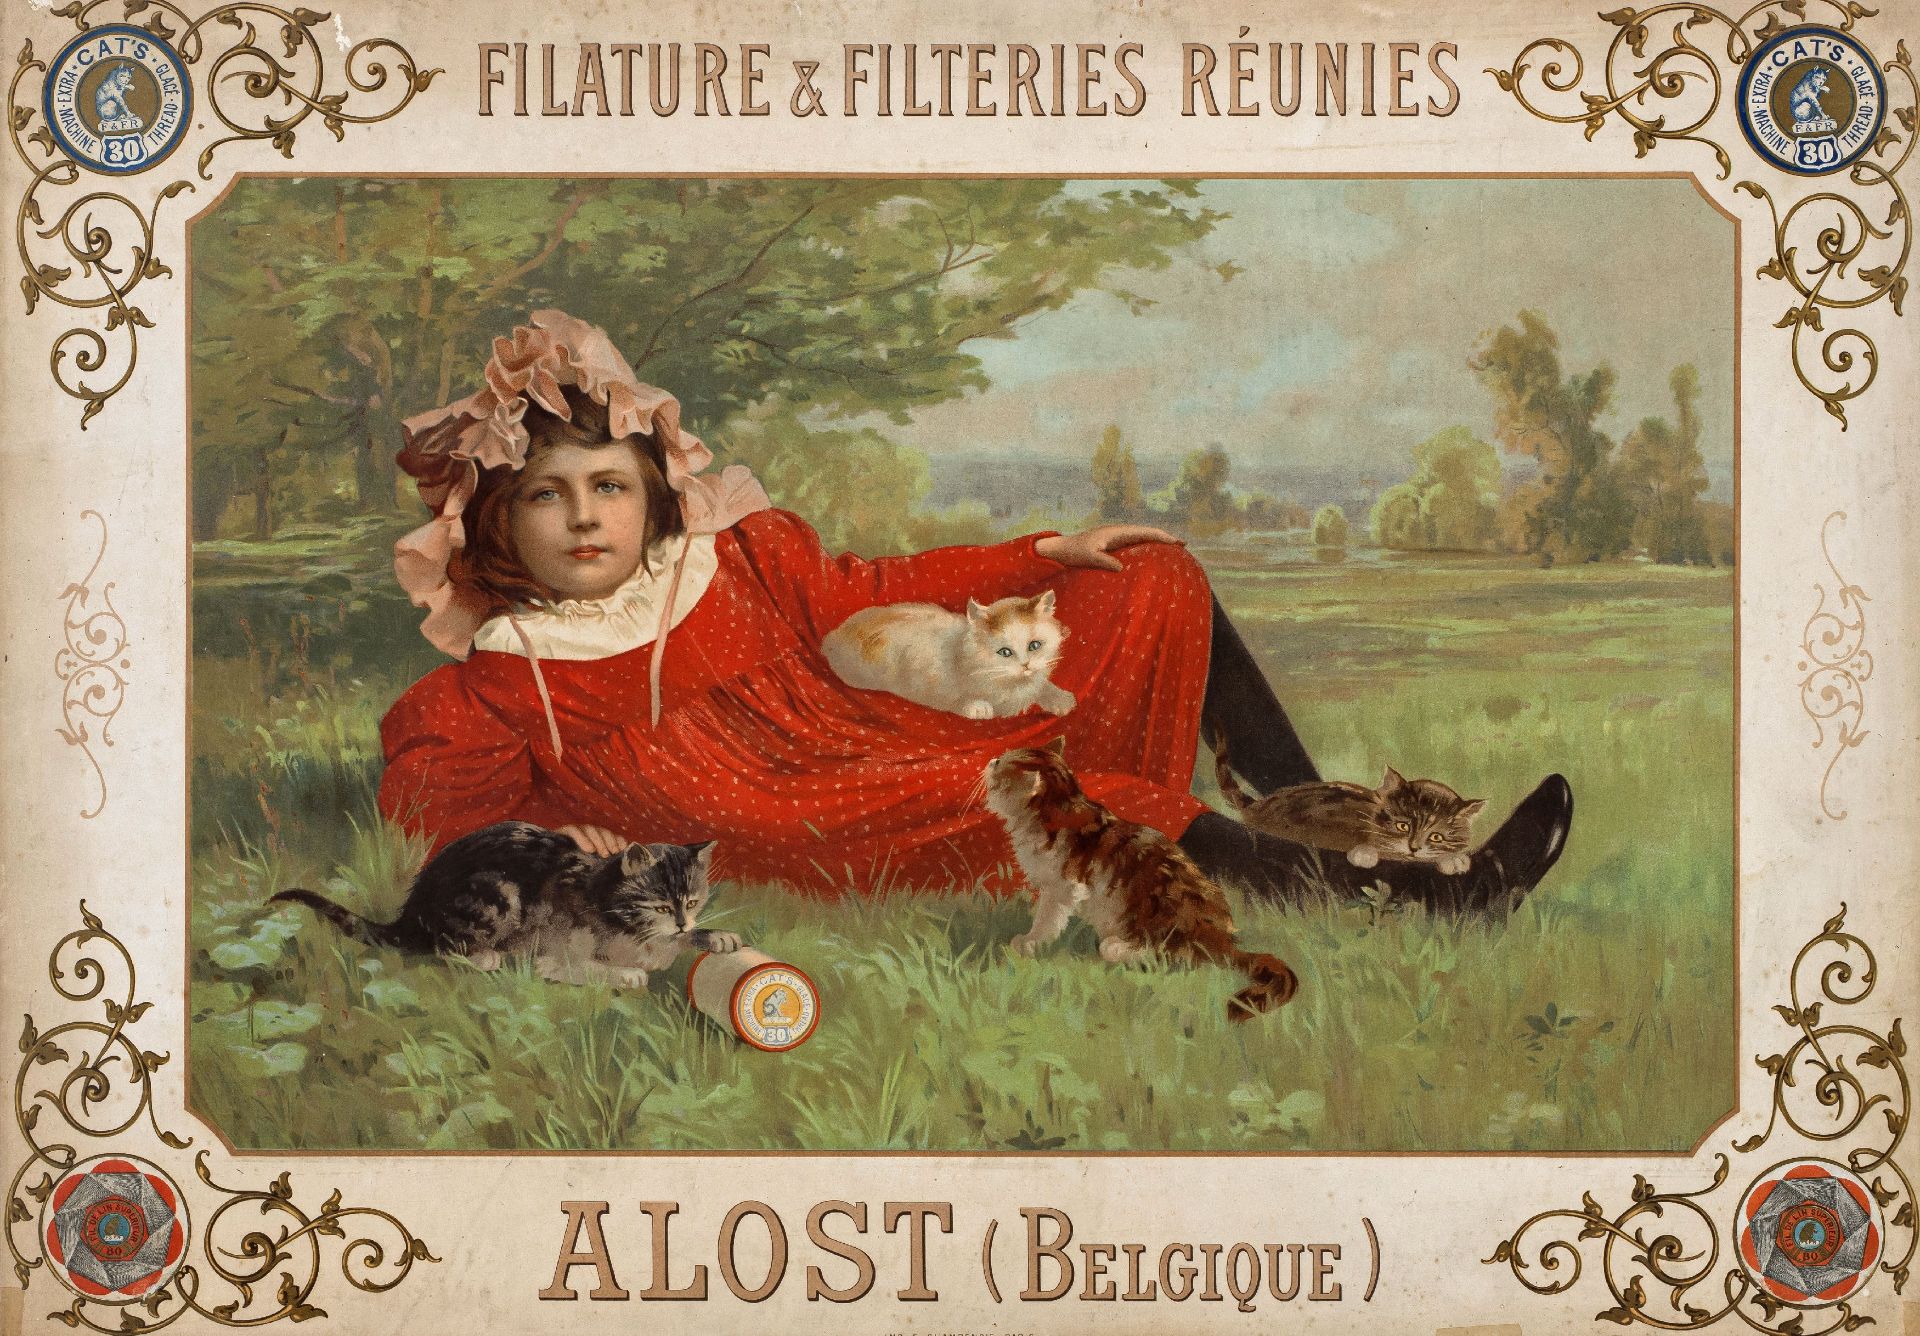 Werbeplakat | Kurzwaren-Fabrik: "FILATURE & FILTERIES RÉUNIES, ALOST (Belgique)"